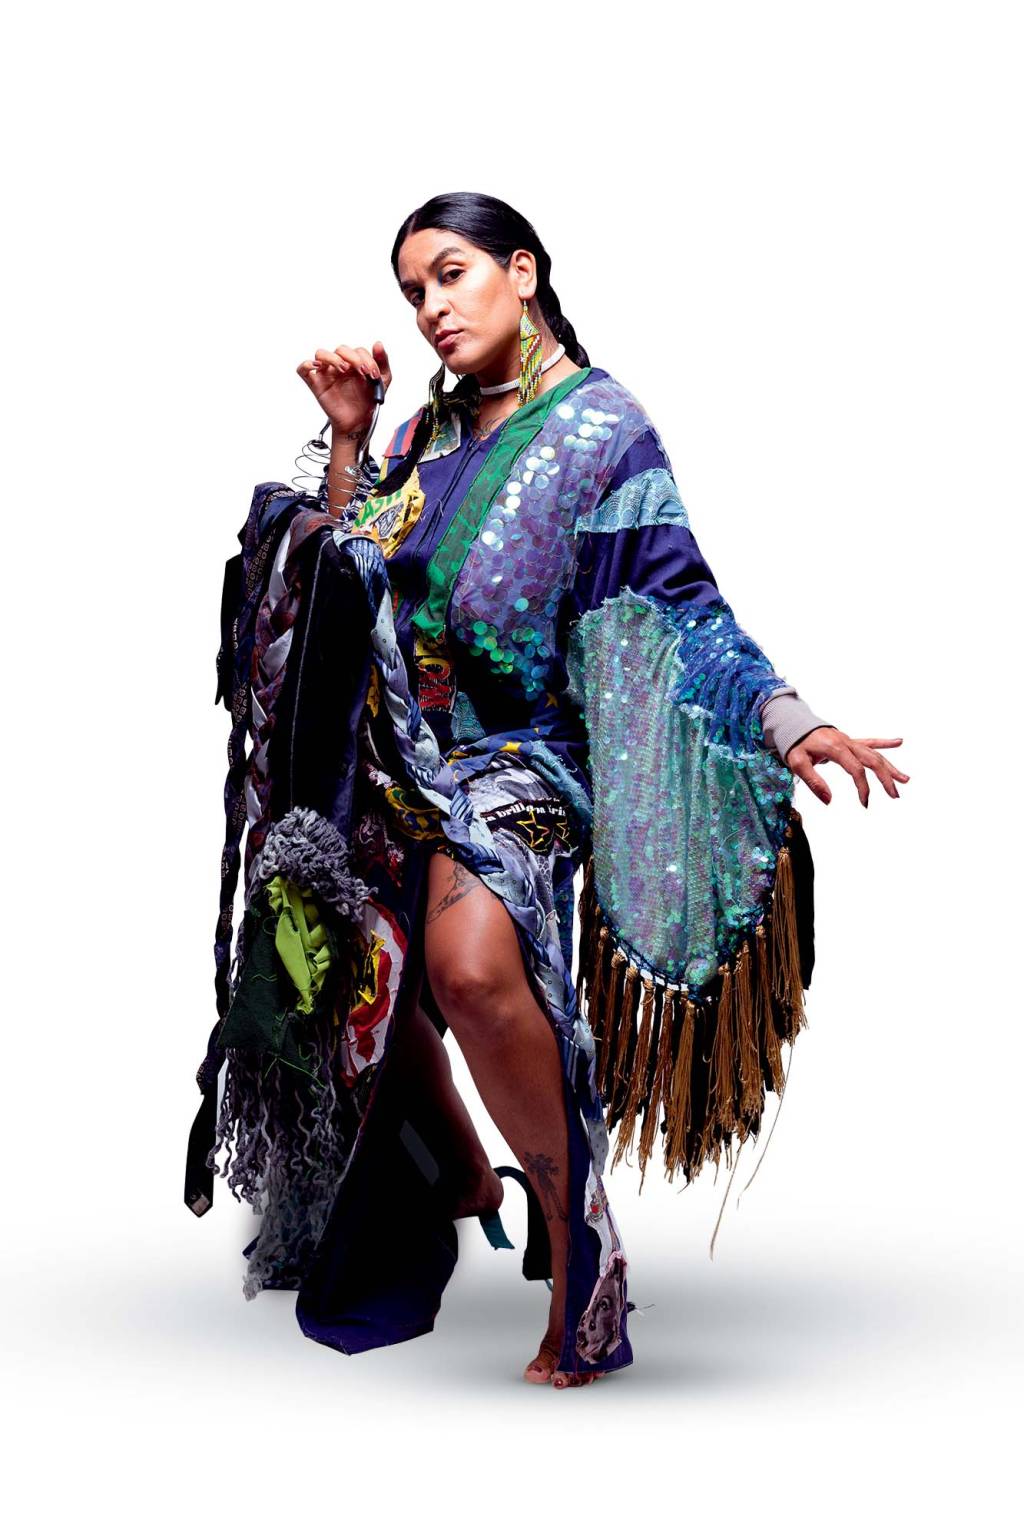 Imagem mostra mulher indígena com roupa brilhante azul